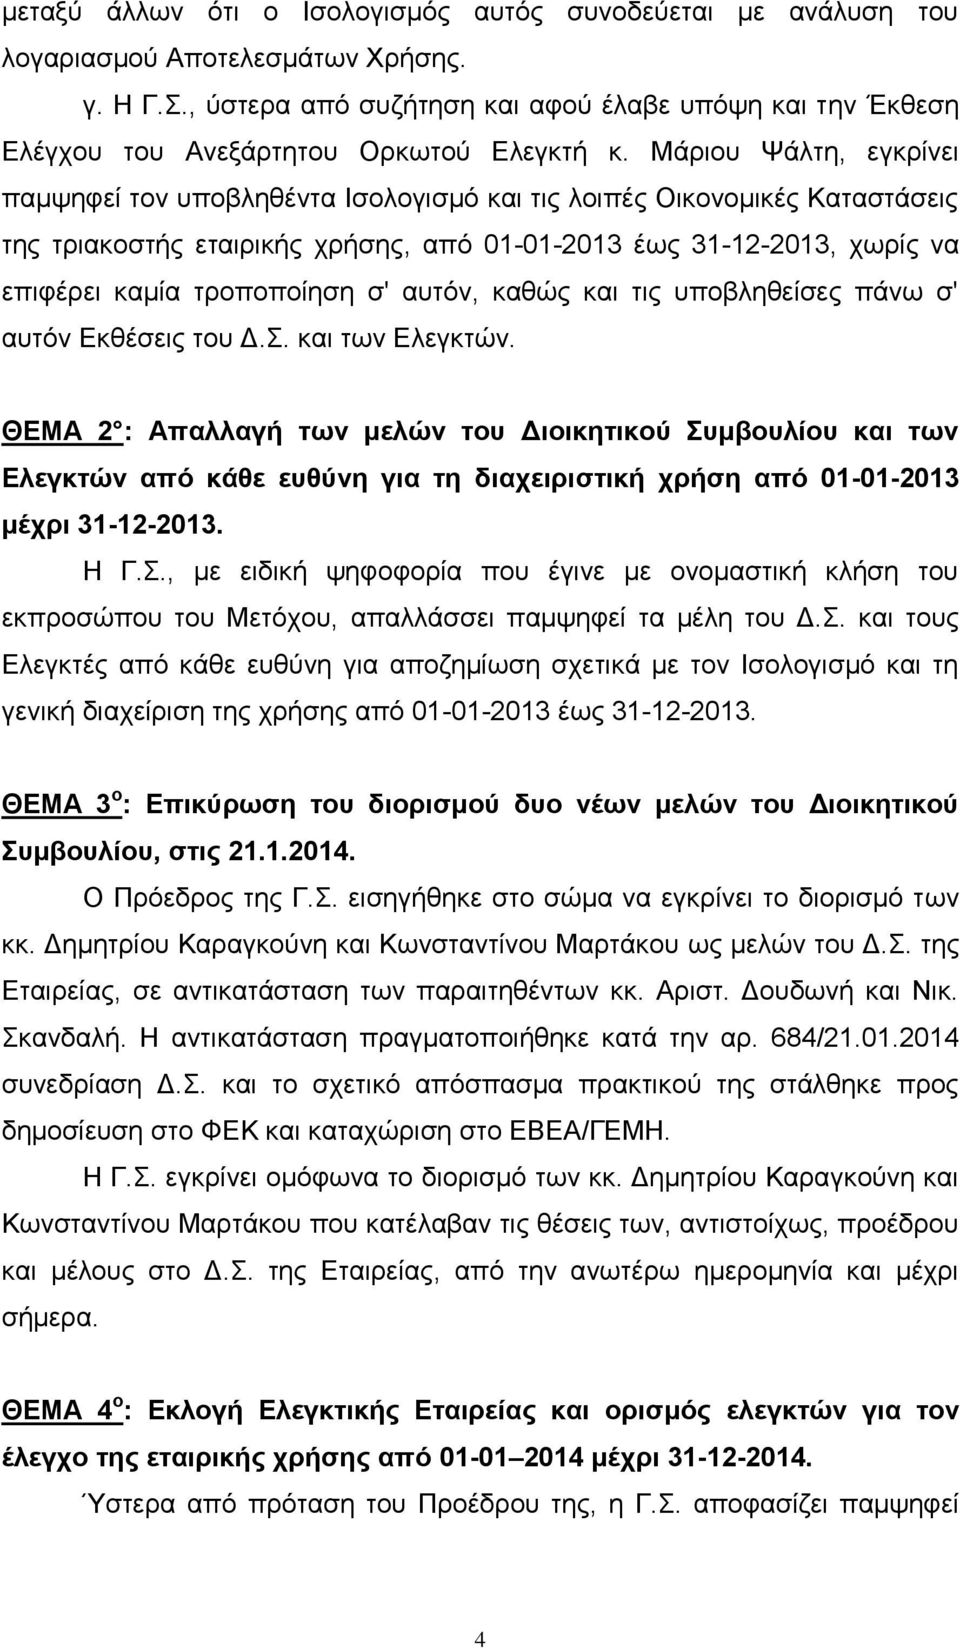 Μάριου Ψάλτη, εγκρίνει παμψηφεί τον υποβληθέντα Ισολογισμό και τις λοιπές Οικονομικές Καταστάσεις της τριακοστής εταιρικής χρήσης, από 01-01-2013 έως 31-12-2013, χωρίς να επιφέρει καμία τροποποίηση